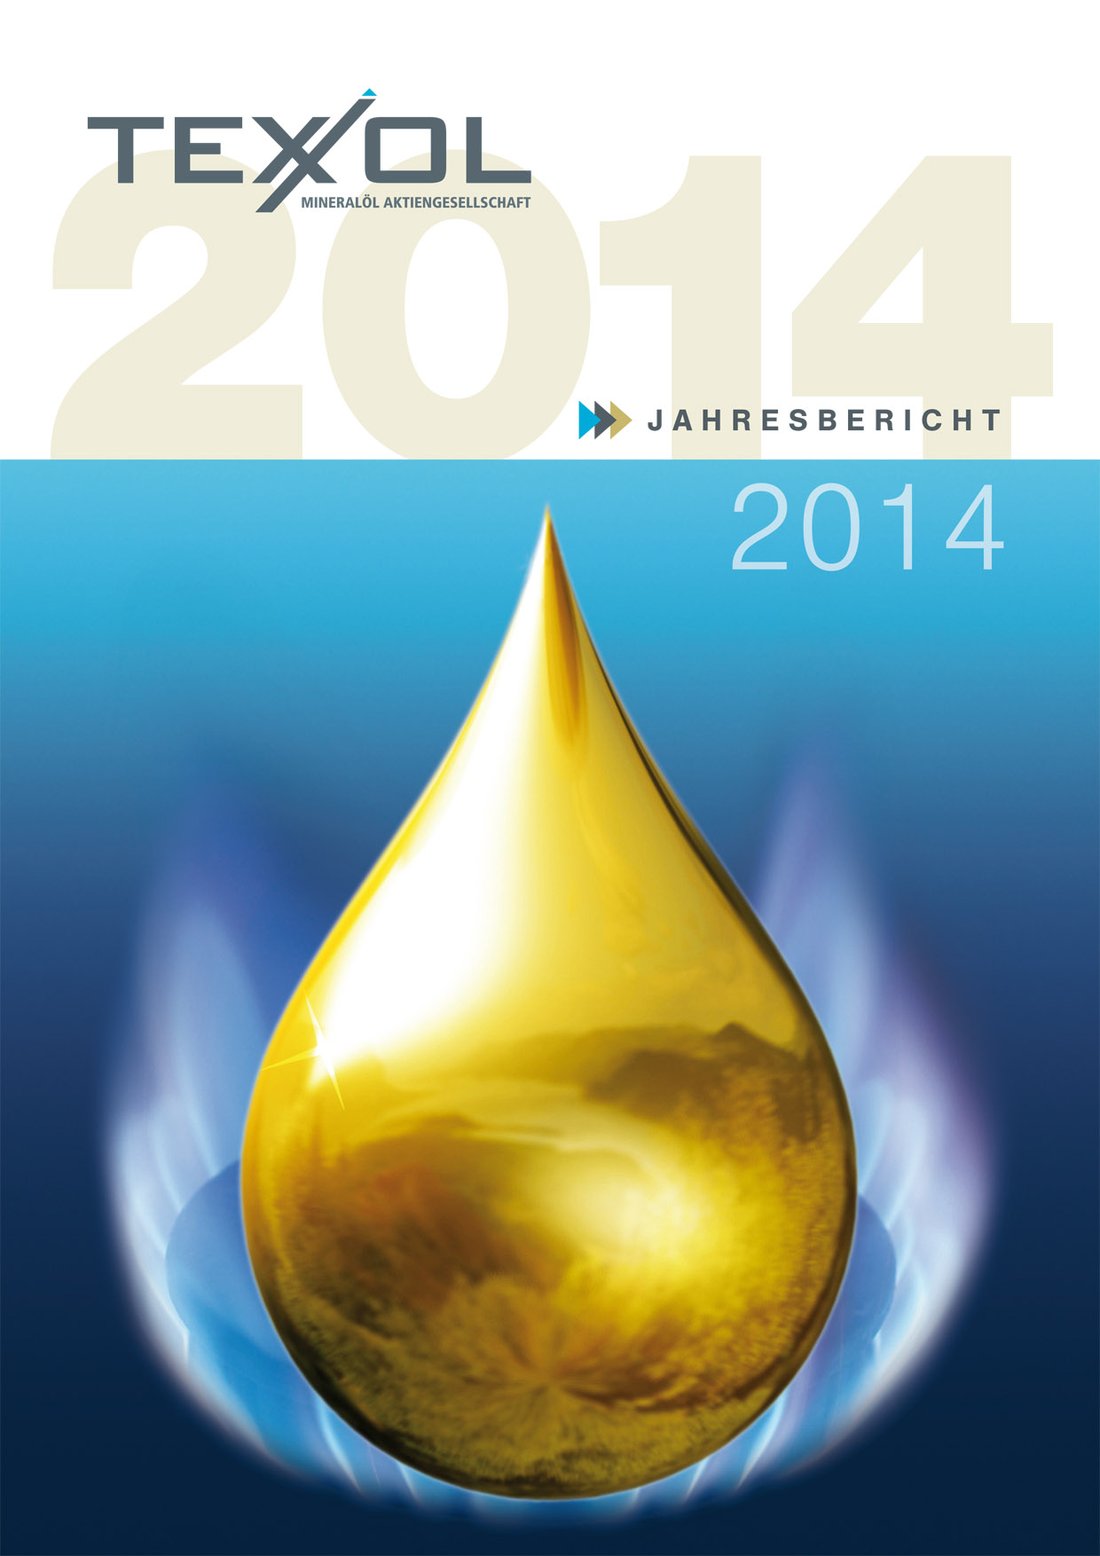 Titelseite Texxol Jahresbericht 2014